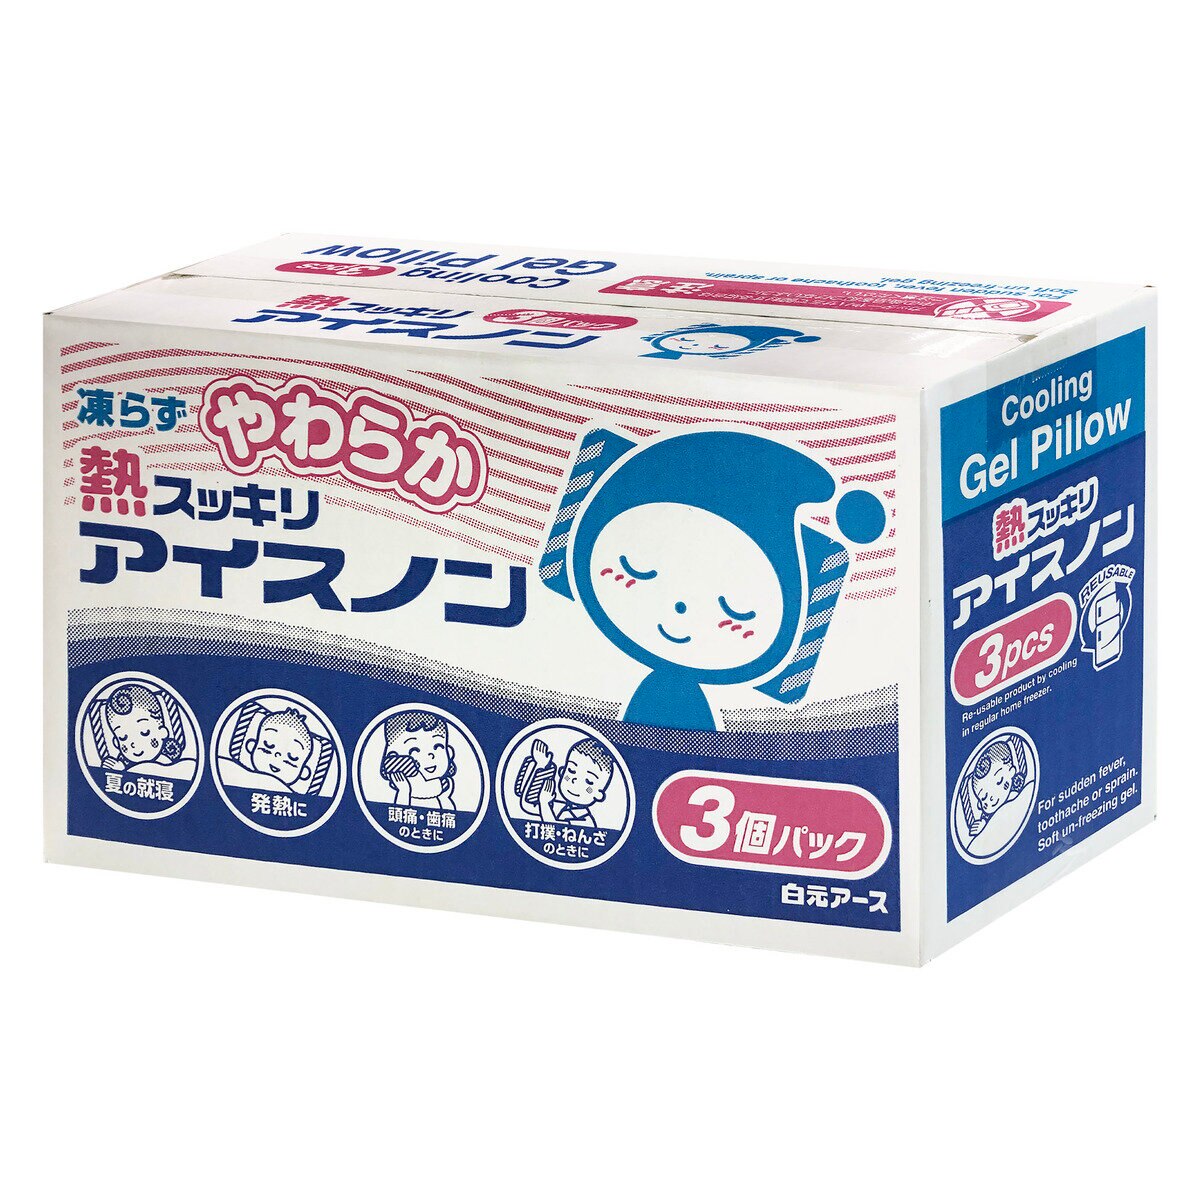 白元アース やわらか熱スッキリ アイスノン 3 個パック | Costco Japan